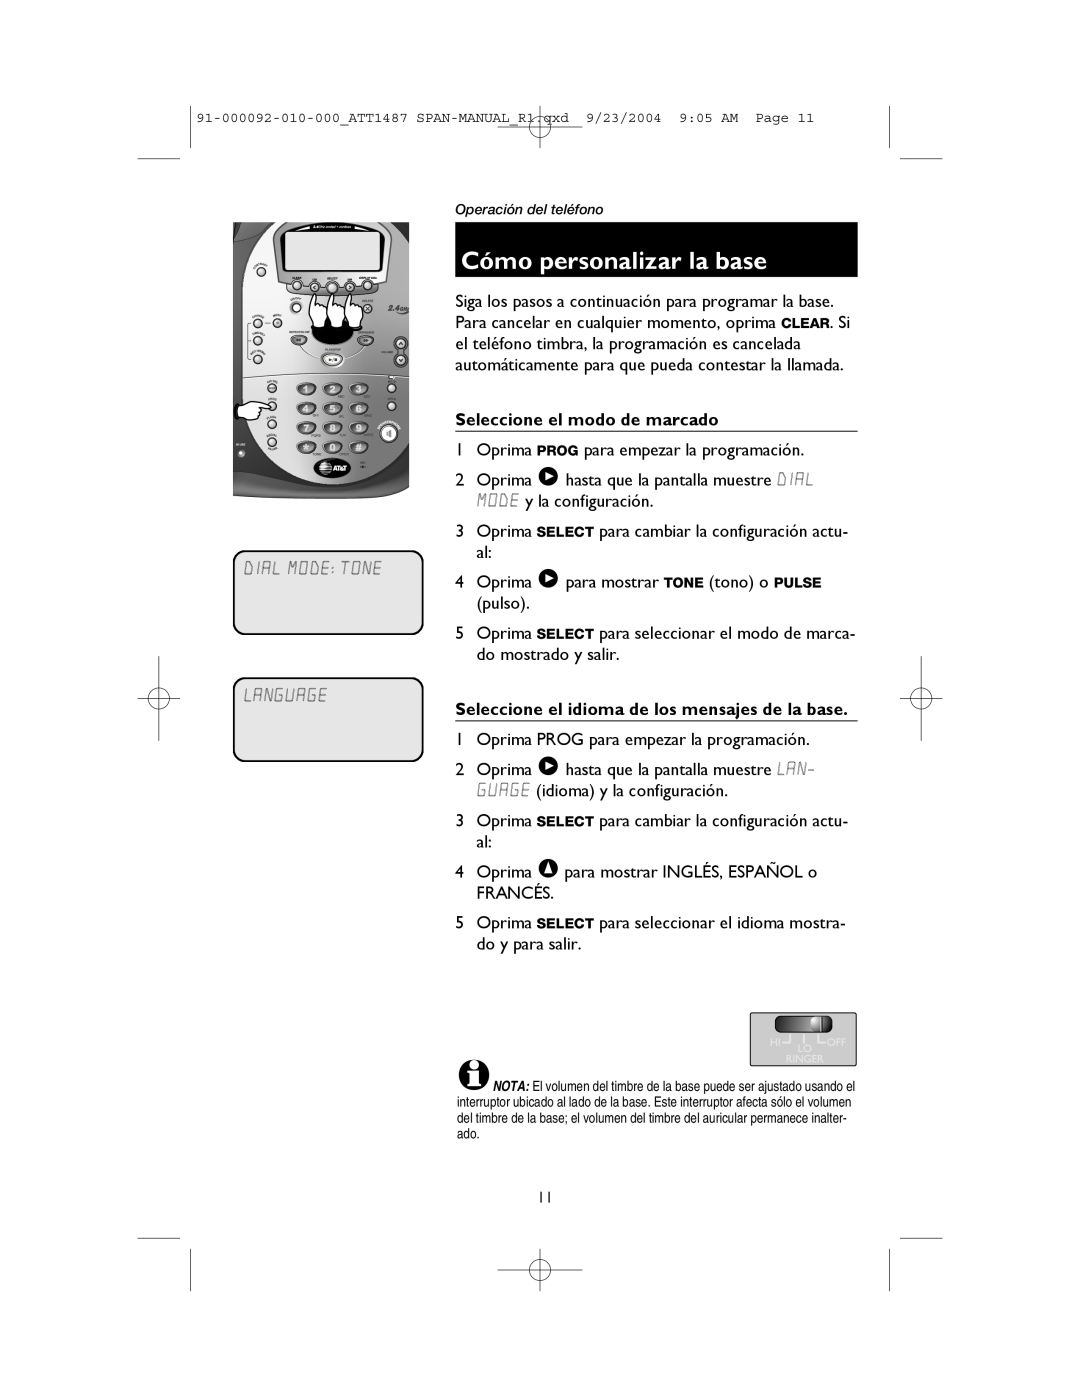 AT&T 1187, 1487 manual Cómo personalizar la base, Dial Mode Tone Language, Seleccione el modo de marcado 